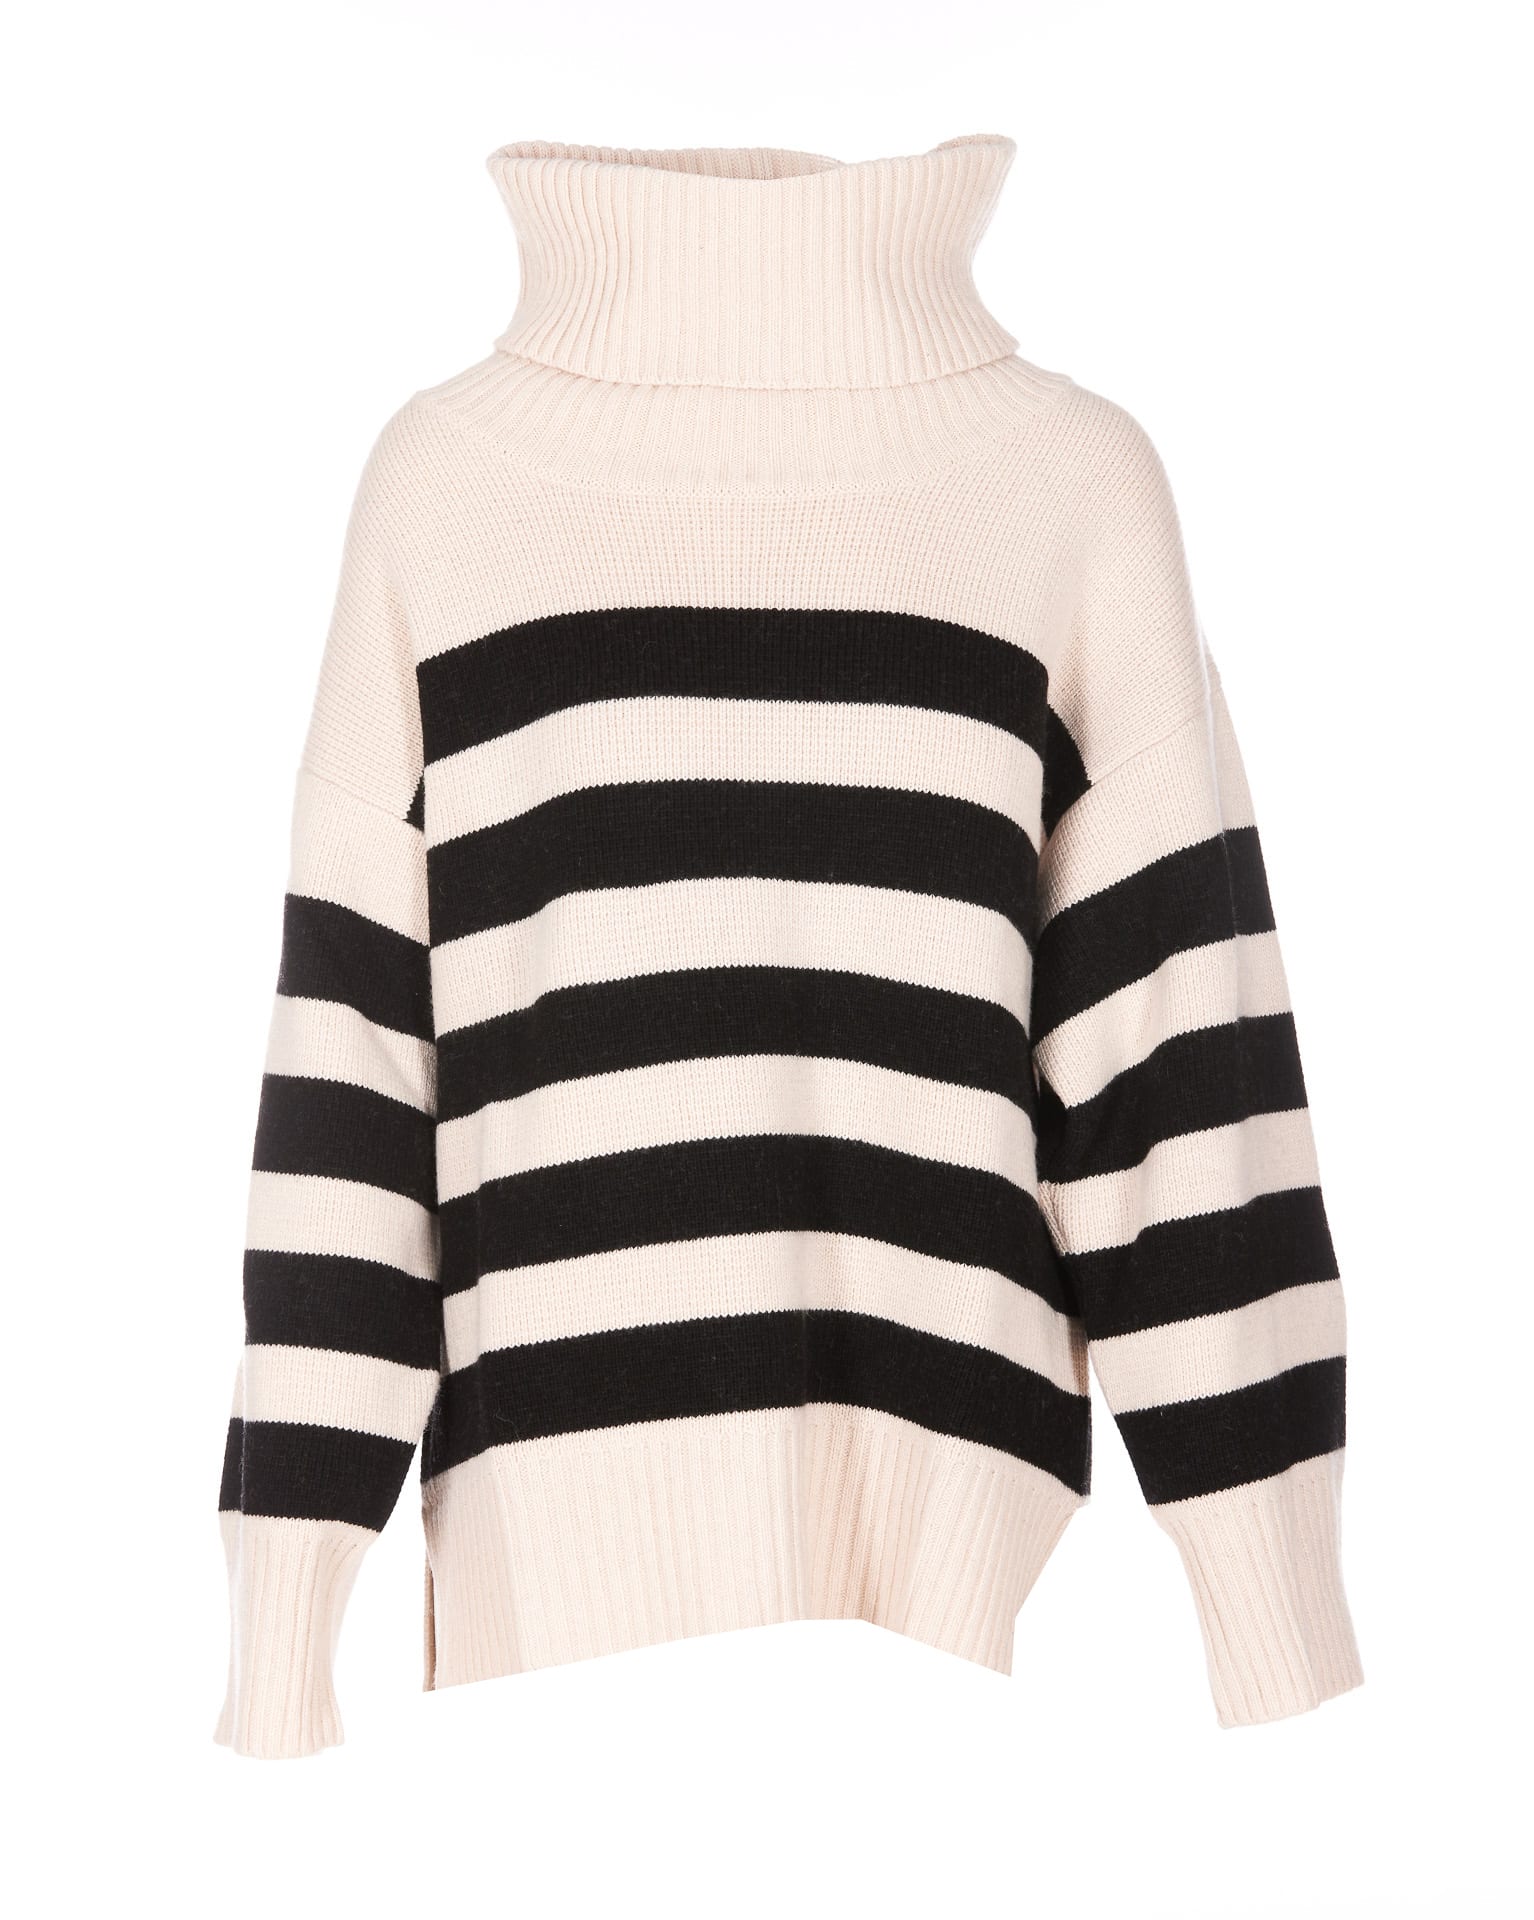 Ivy Oak Kasia Sweater